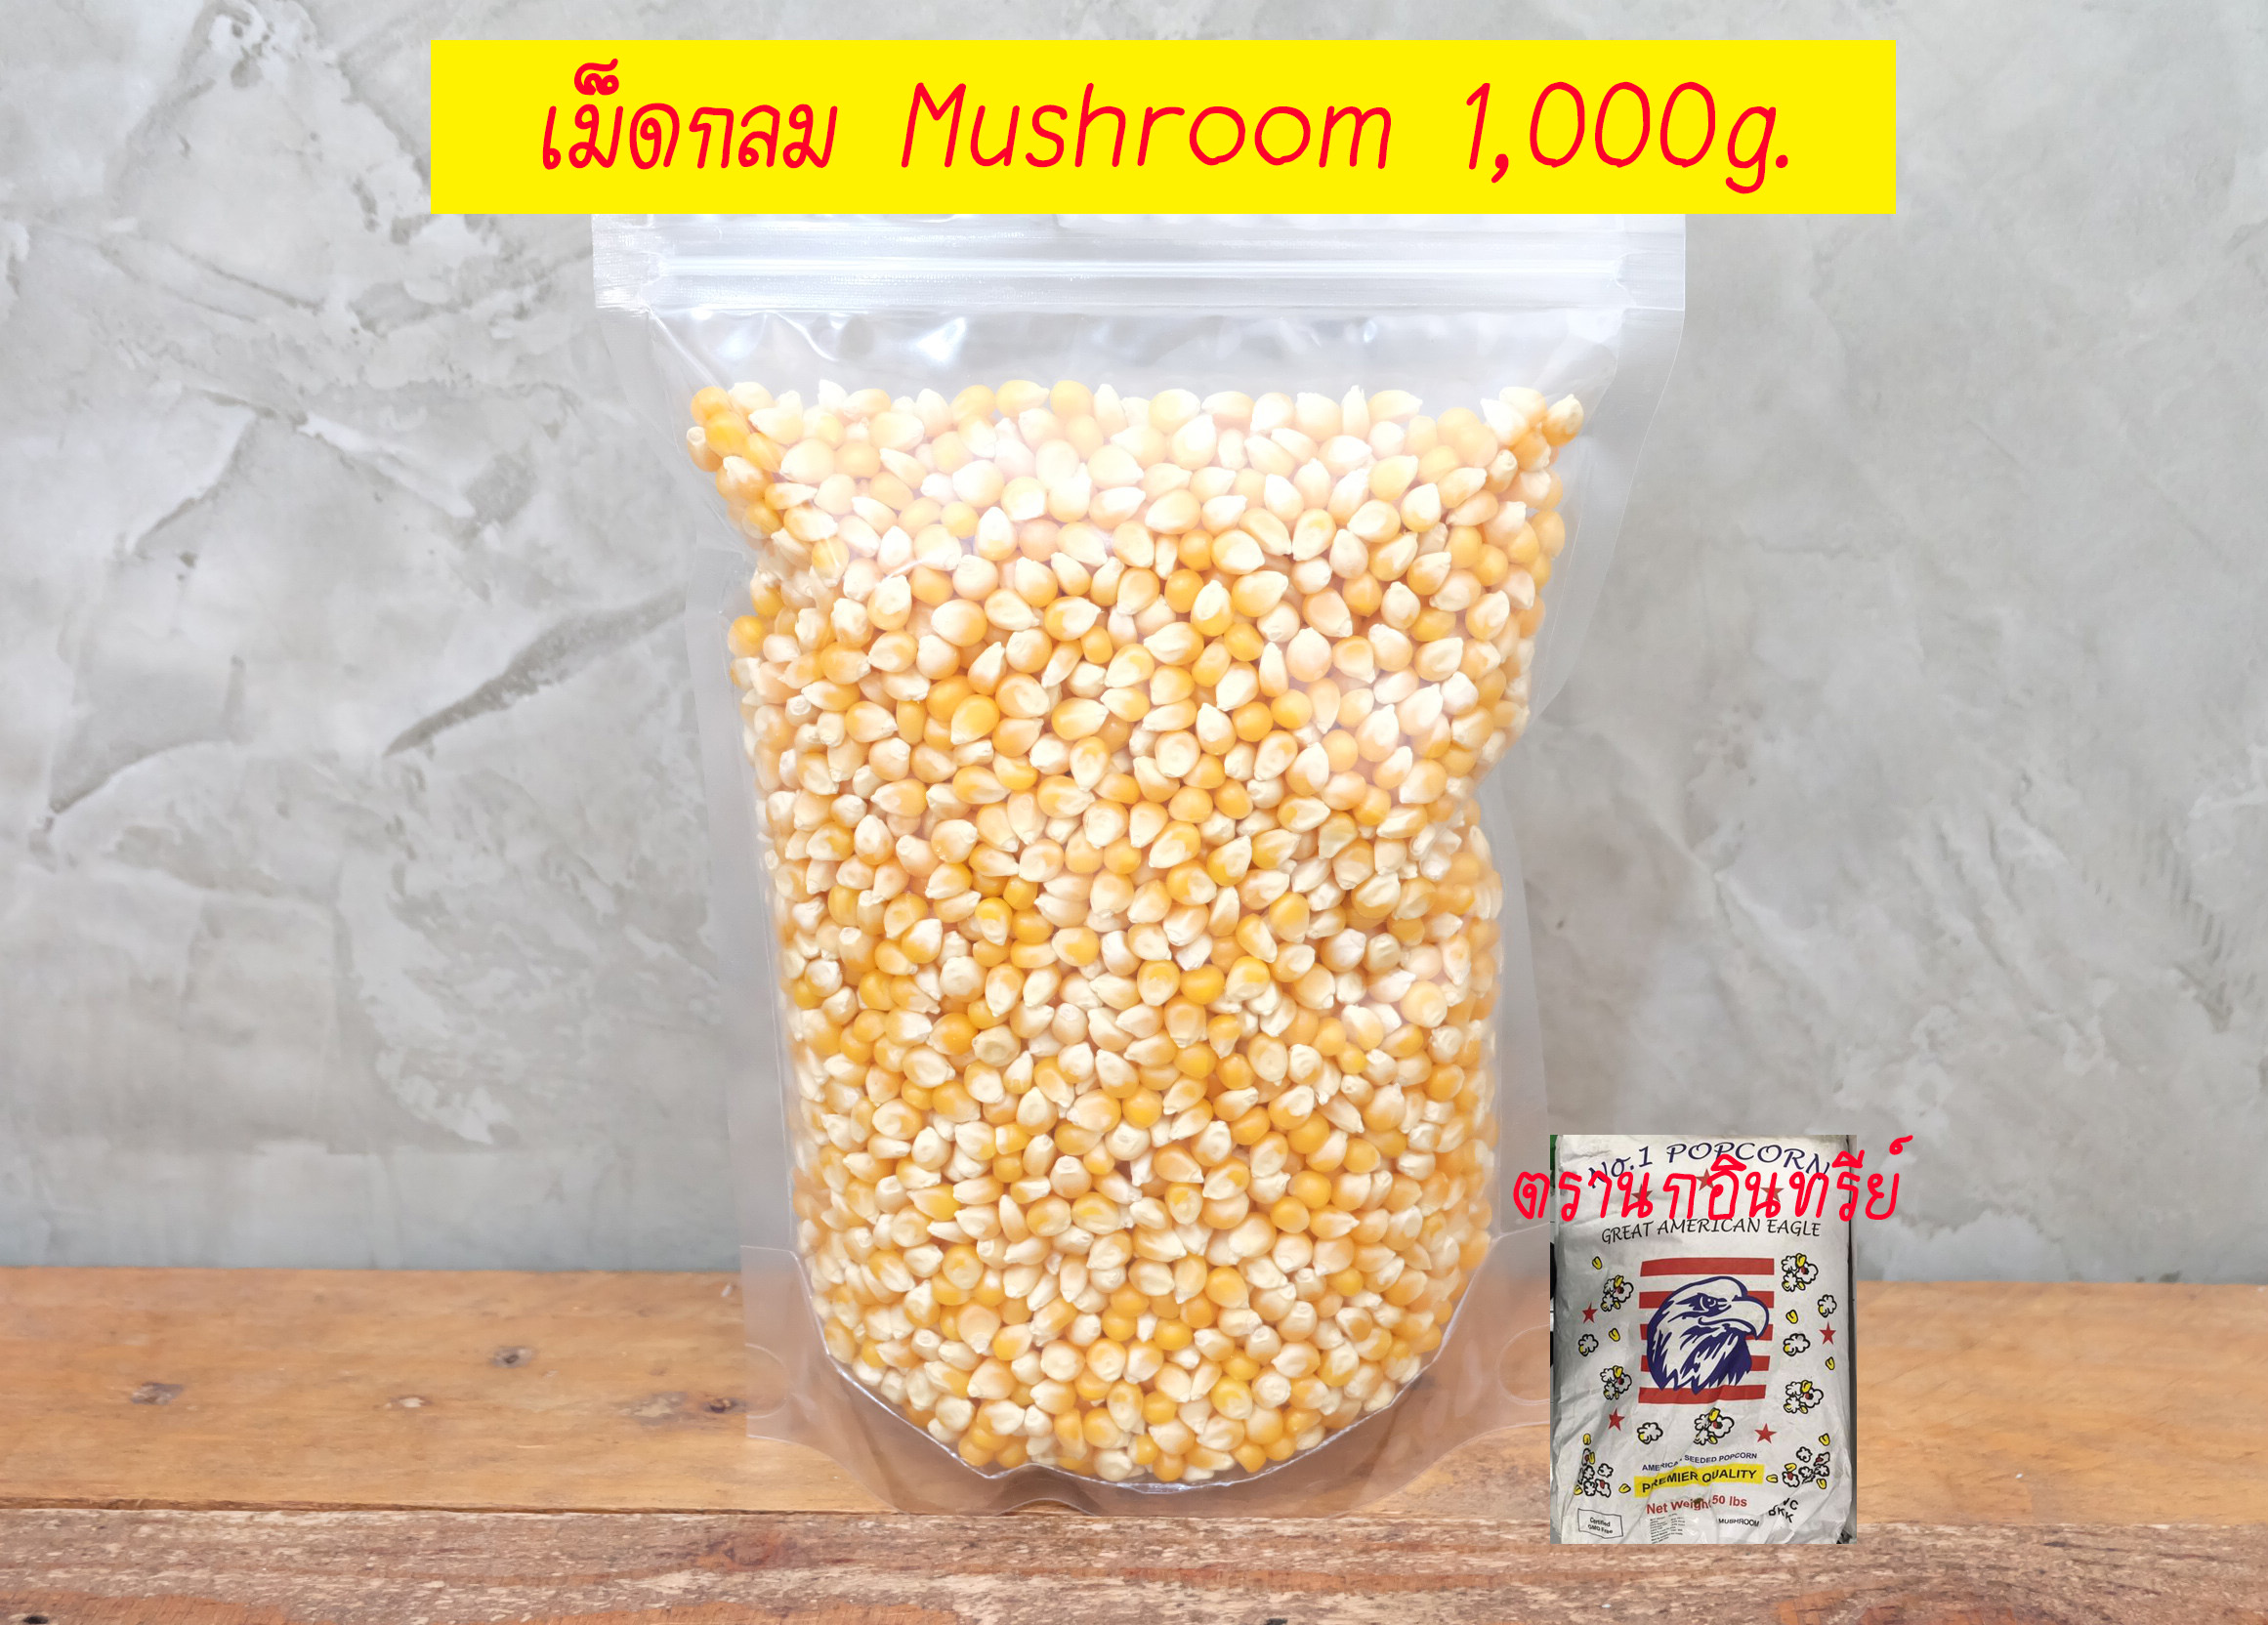 เมล็ดข้าวโพดดิบ นำเข้าจากอเมริกา 1kg จัดส่งด่วน เมล็ดป็อปคอร์นดิบ เมล็ดทรงกลม พันธุ์เห็ด (Mushroom) ขายส่งเมล็ดข้าวโพด พันธุ์Mushroom ราคาถูก